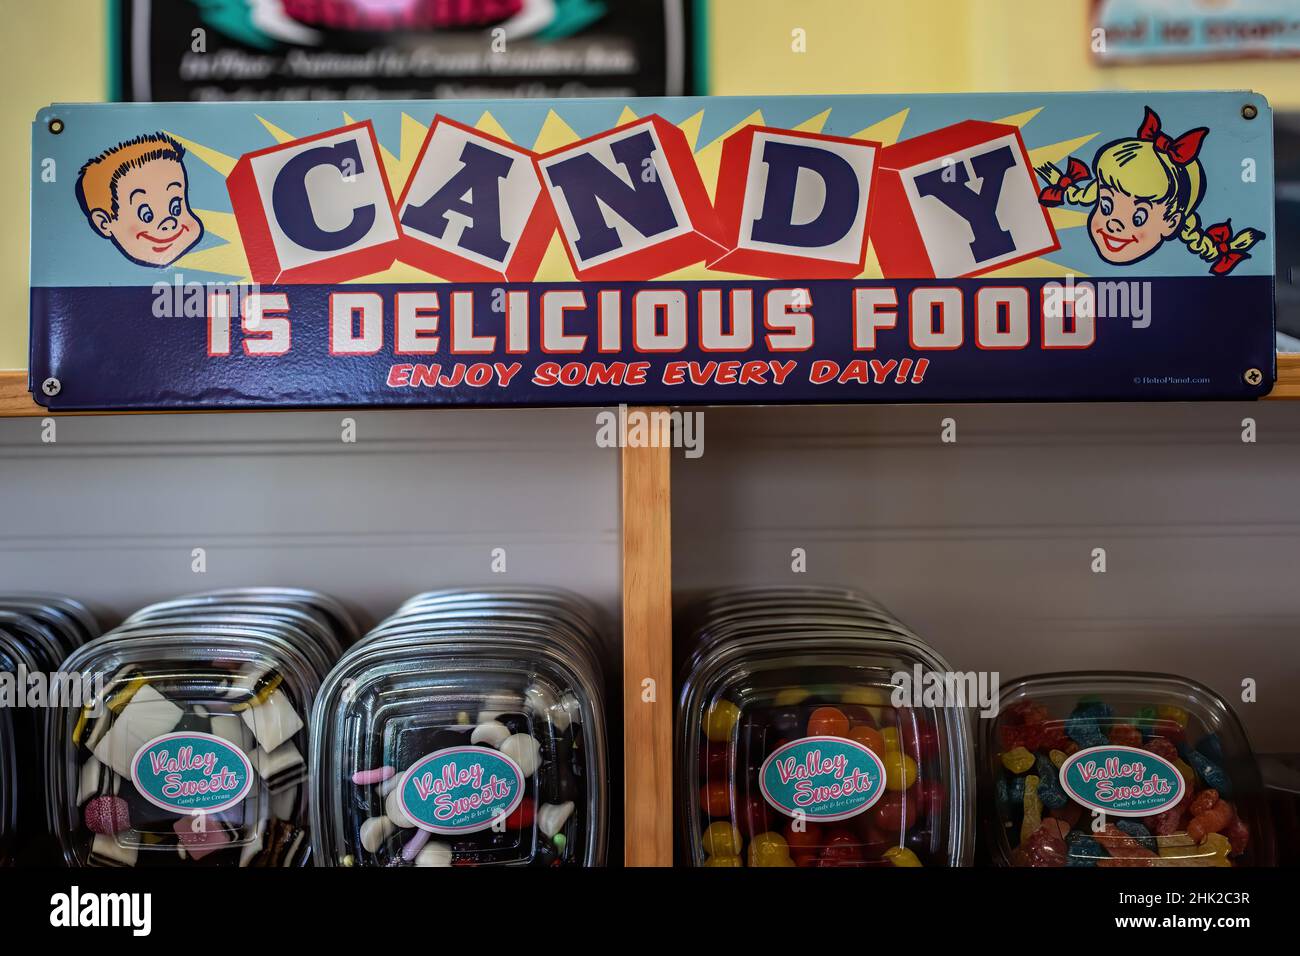 Les bonbons sont une affiche de nourriture délicieuse dans une boutique de crème glacée et de bonbons, Valley Sweets Ice Cream and Candy. Banque D'Images